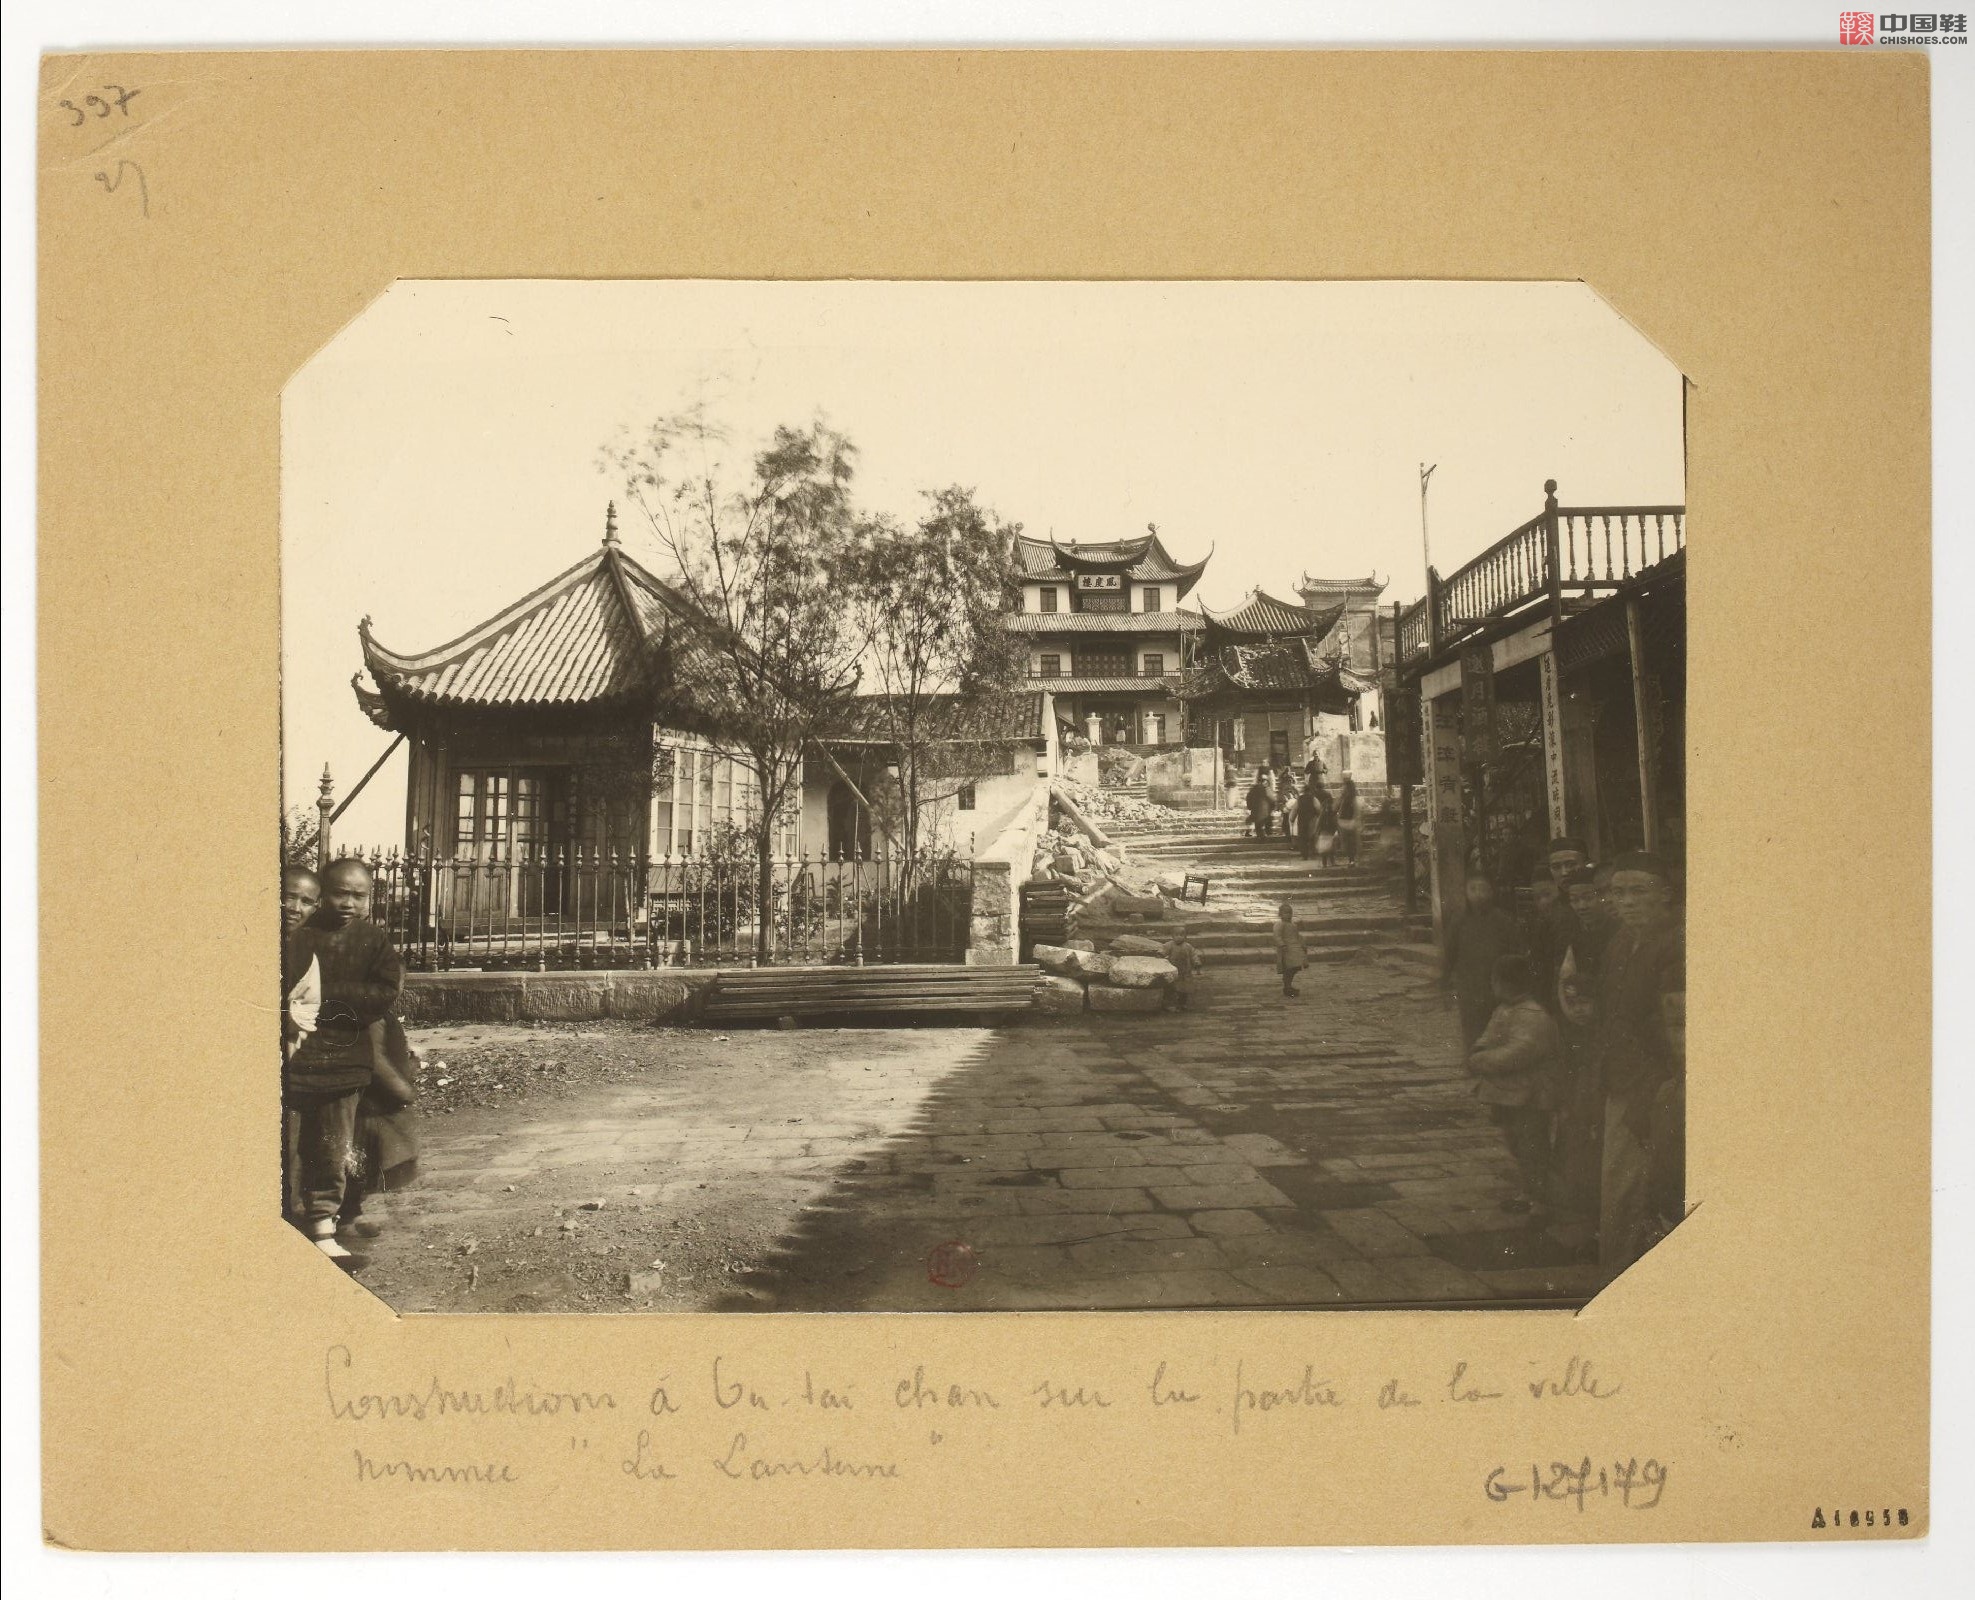 拉里贝的中国影像记录.415幅.By Firmin Laribe.1900-1910年_Page_188.jpg